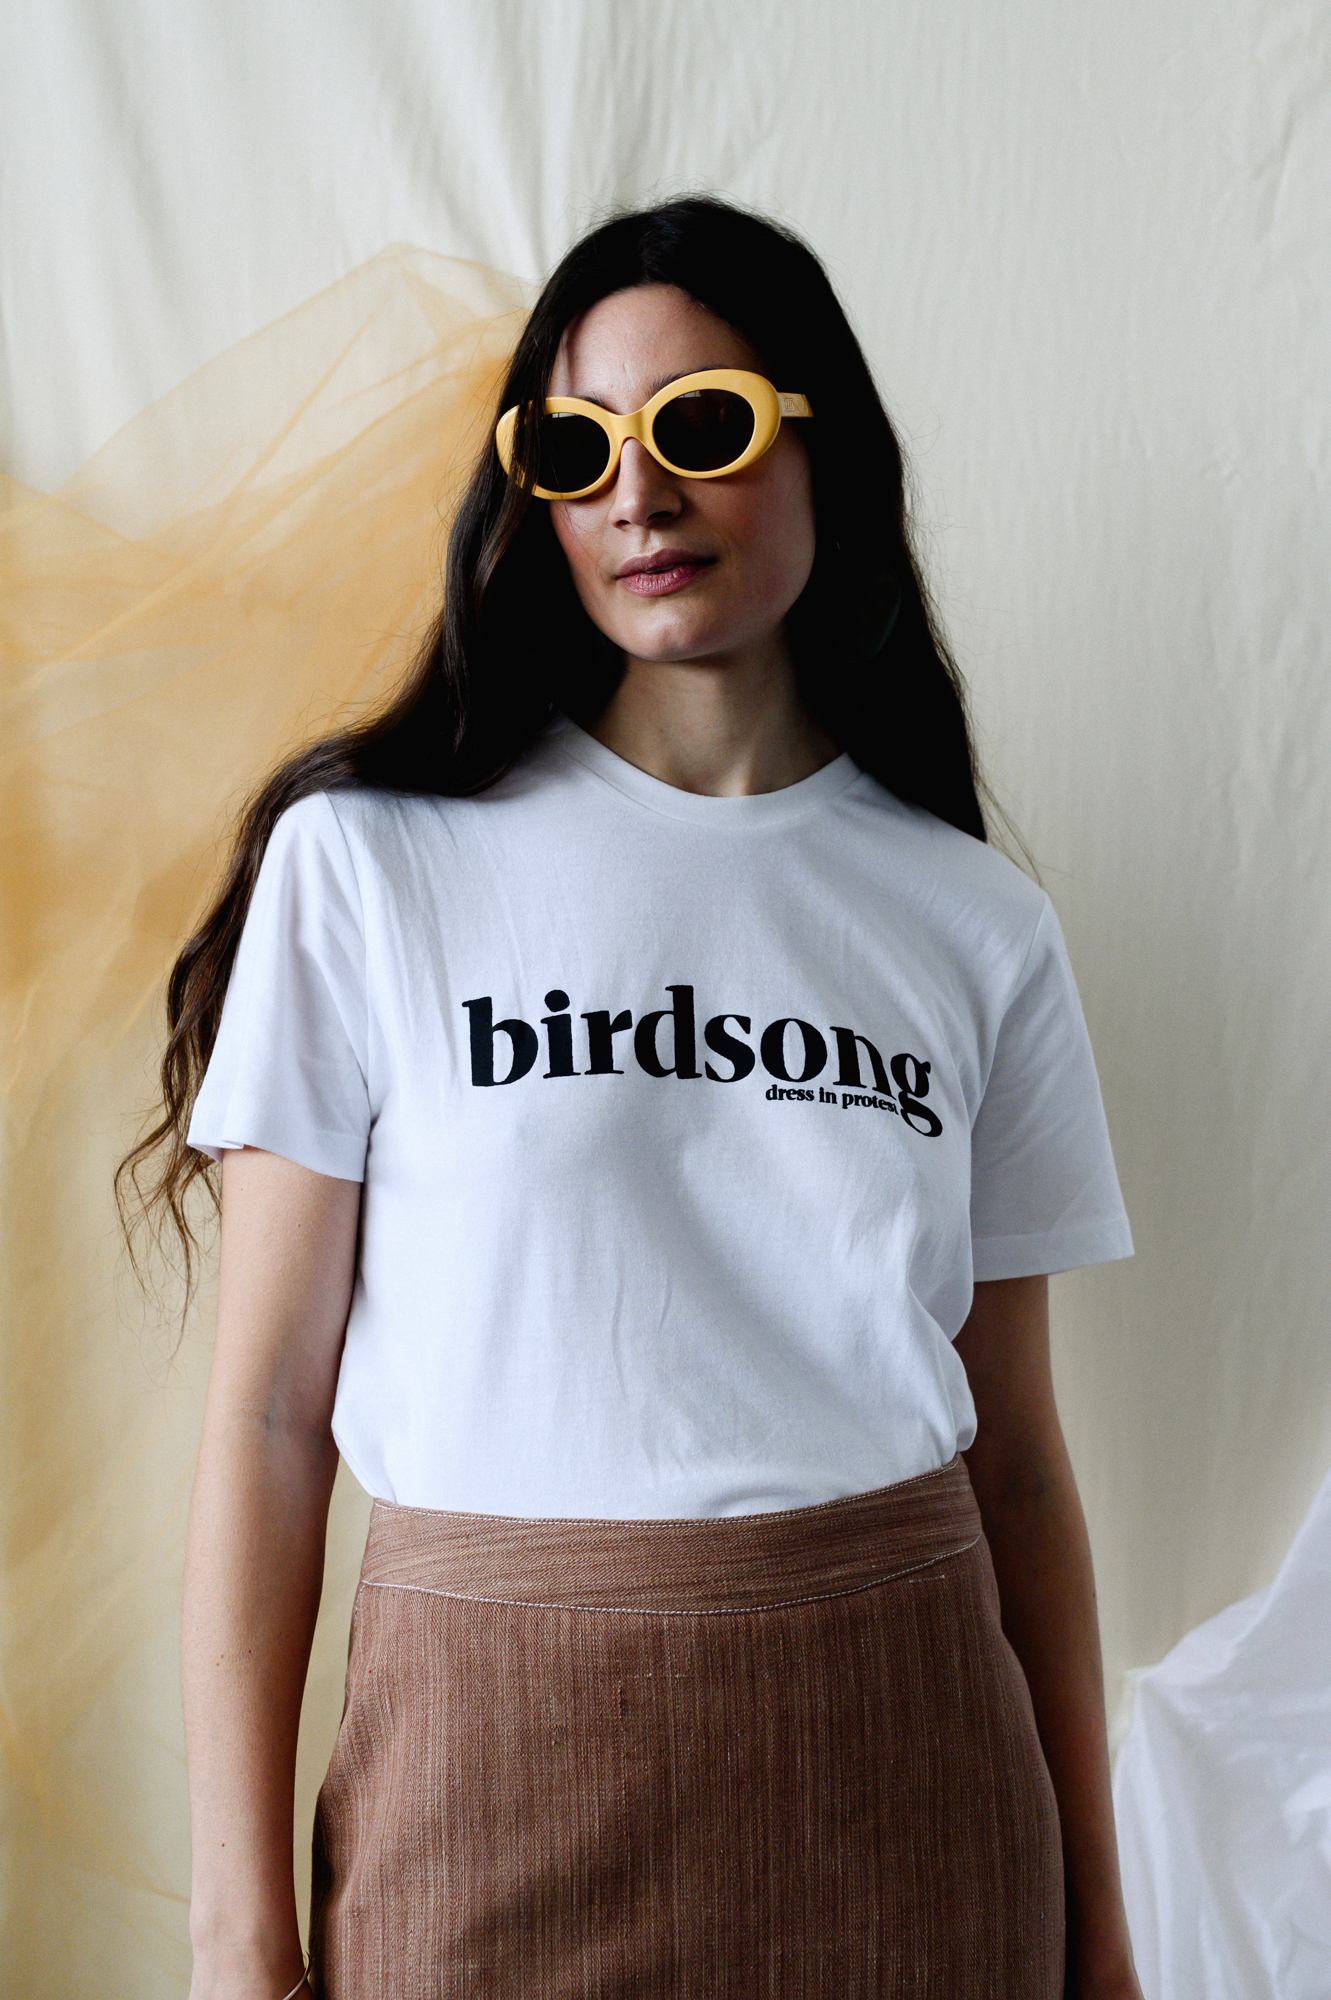 Birdsong SS19 by Rachel Manns